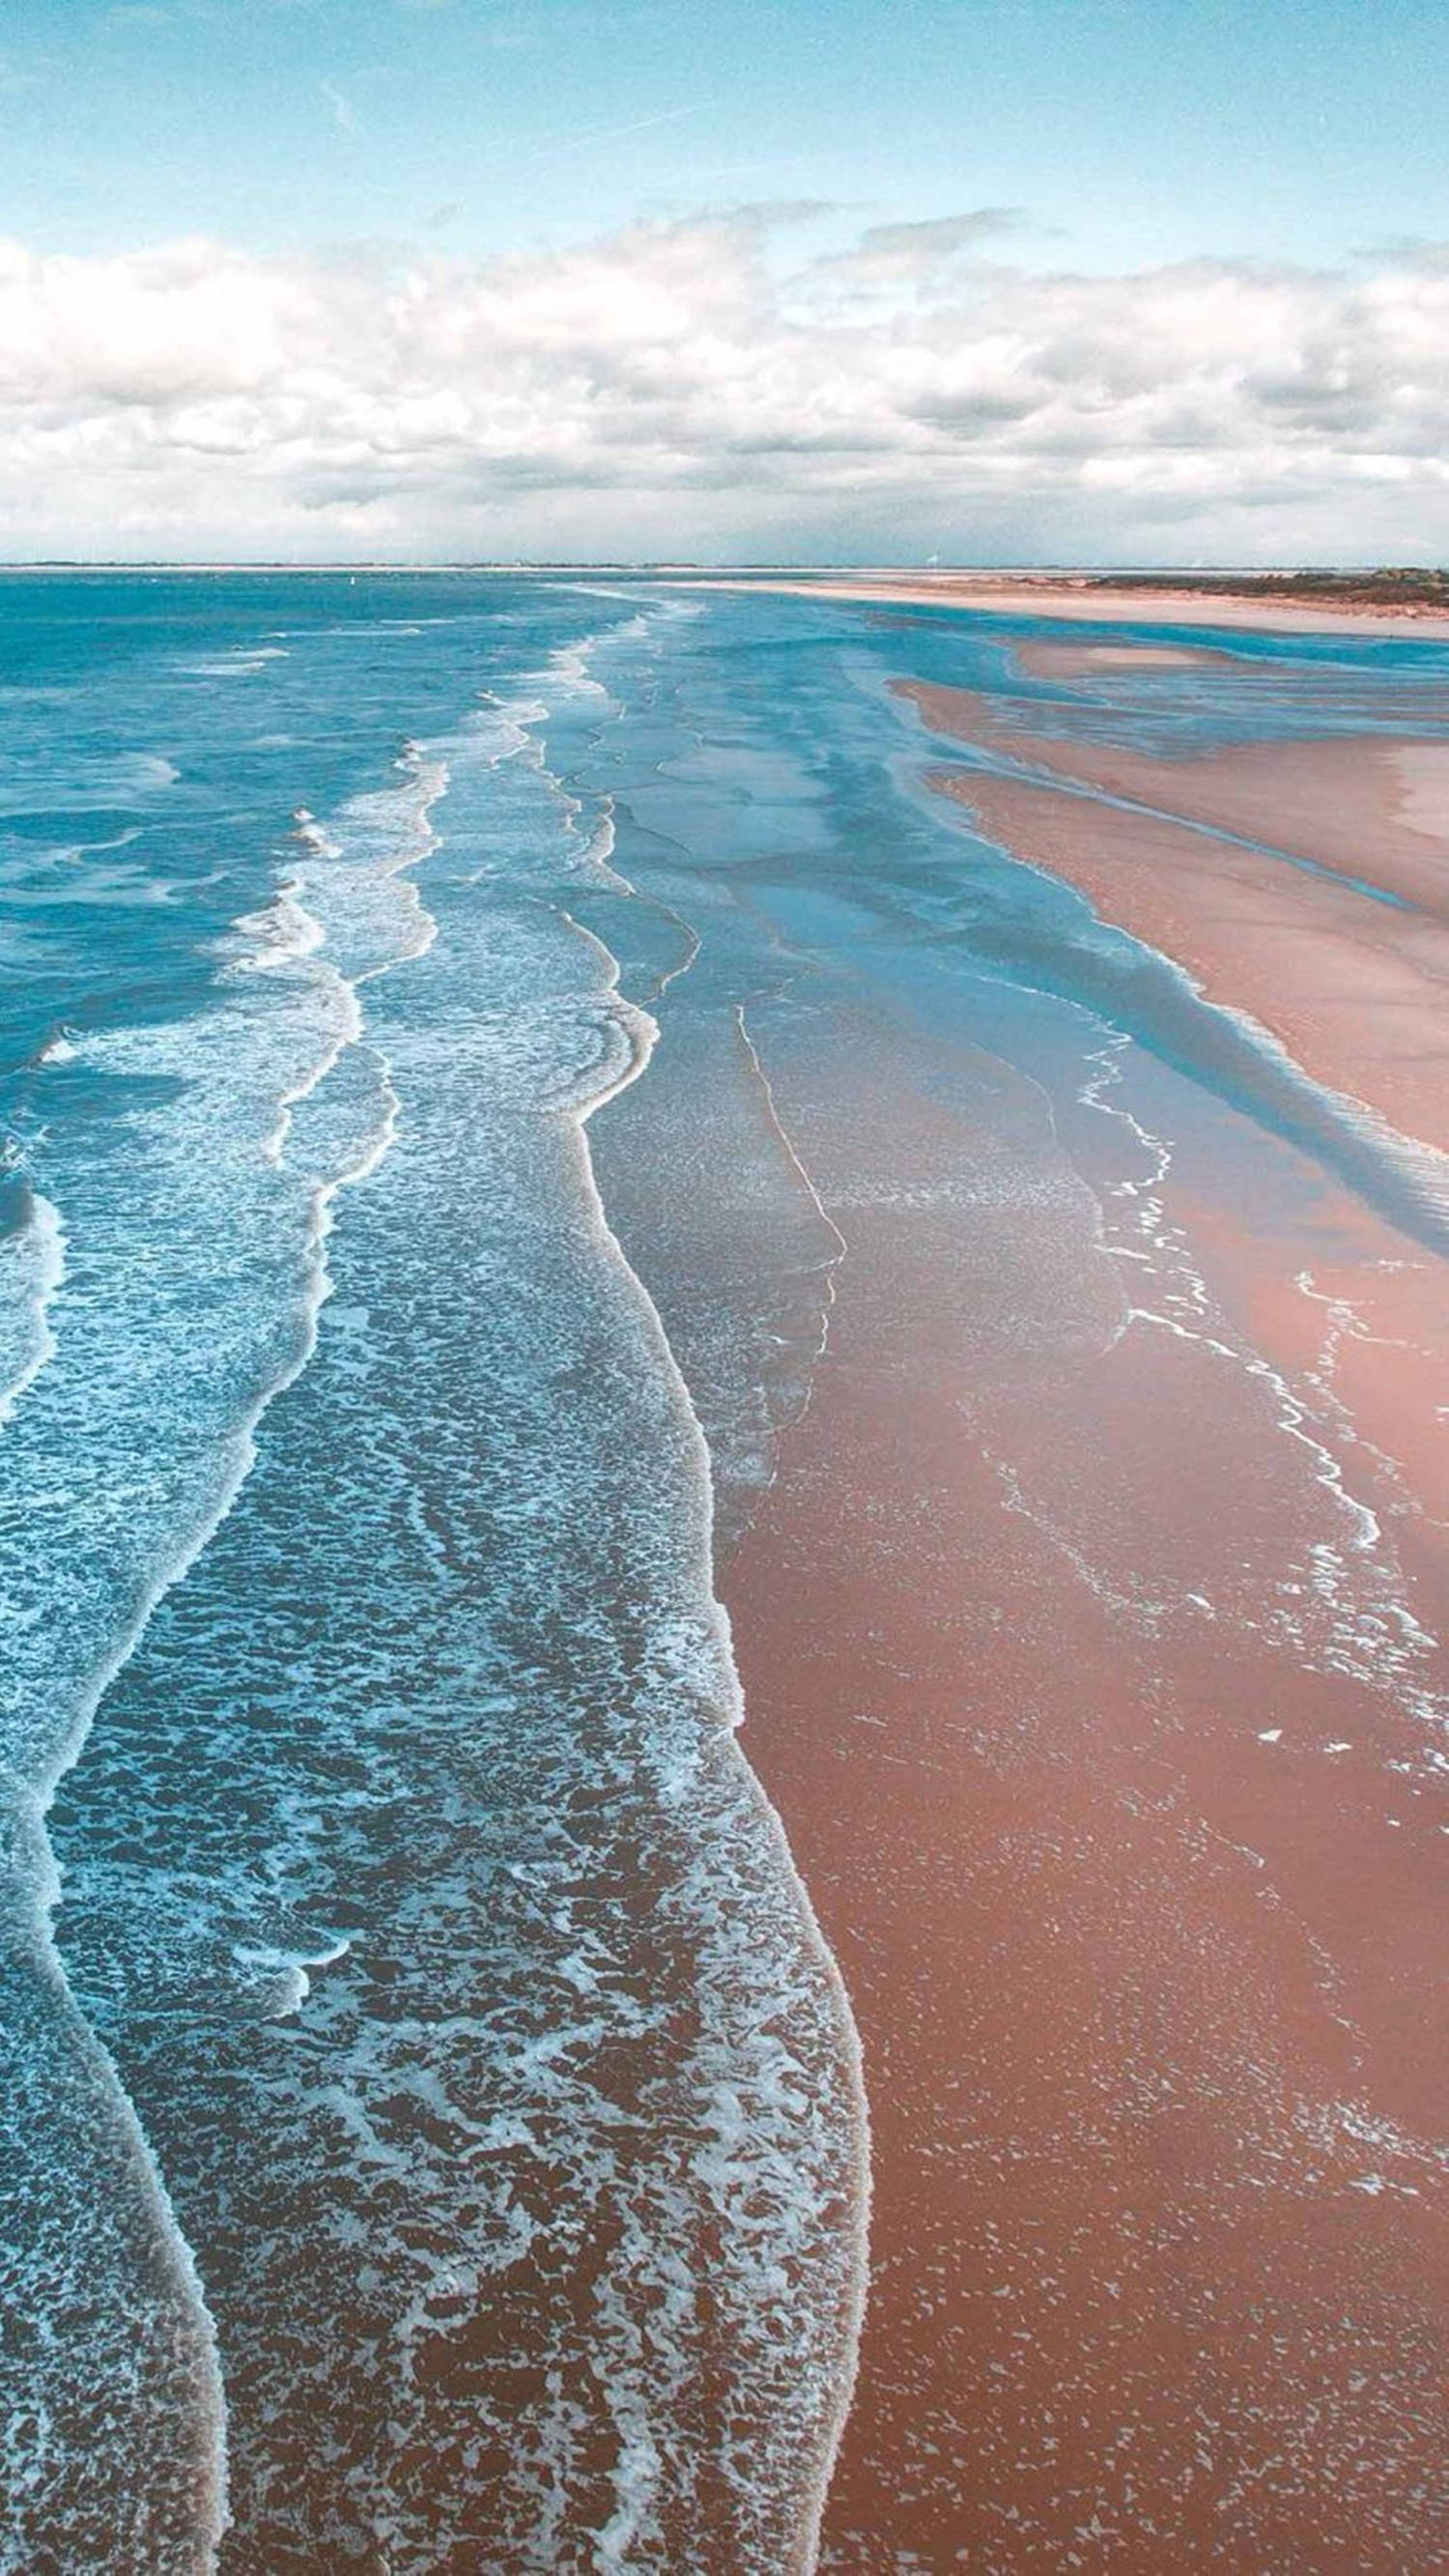 Thưởng thức bức ảnh Wallpaper iPhone XS đầy màu sắc với chủ đề biển đại dương, bạn như được đắm mình trong khung cảnh dịu dàng của cát và sóng biển. Hãy khai thông sự trí tưởng tượng của bạn và tìm hiểu ngay bức hình nền mới nhất này.